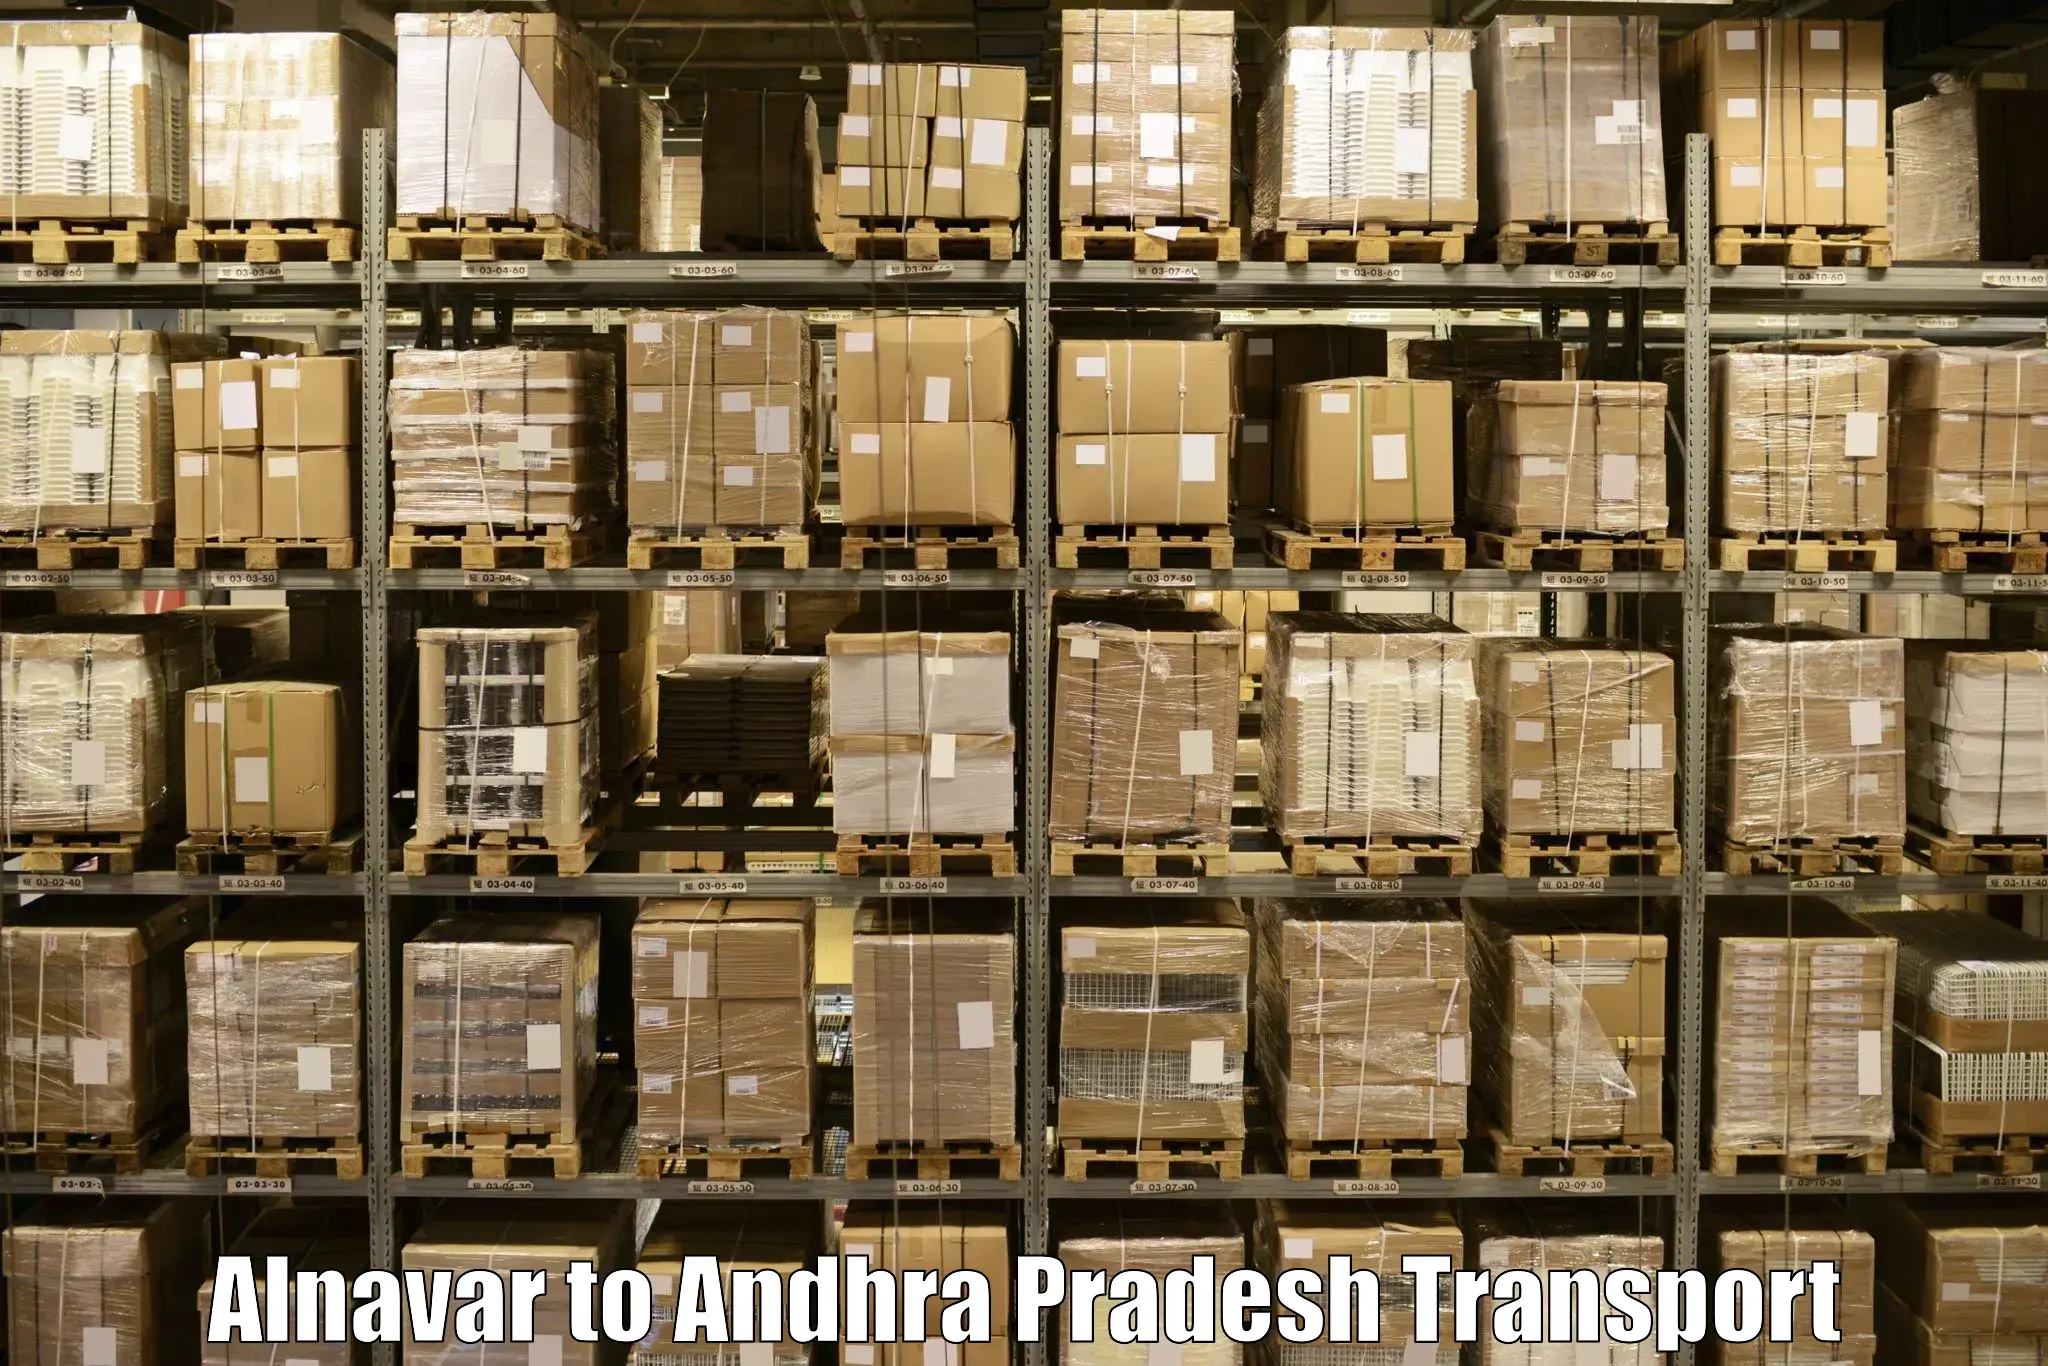 Parcel transport services Alnavar to Andhra Pradesh